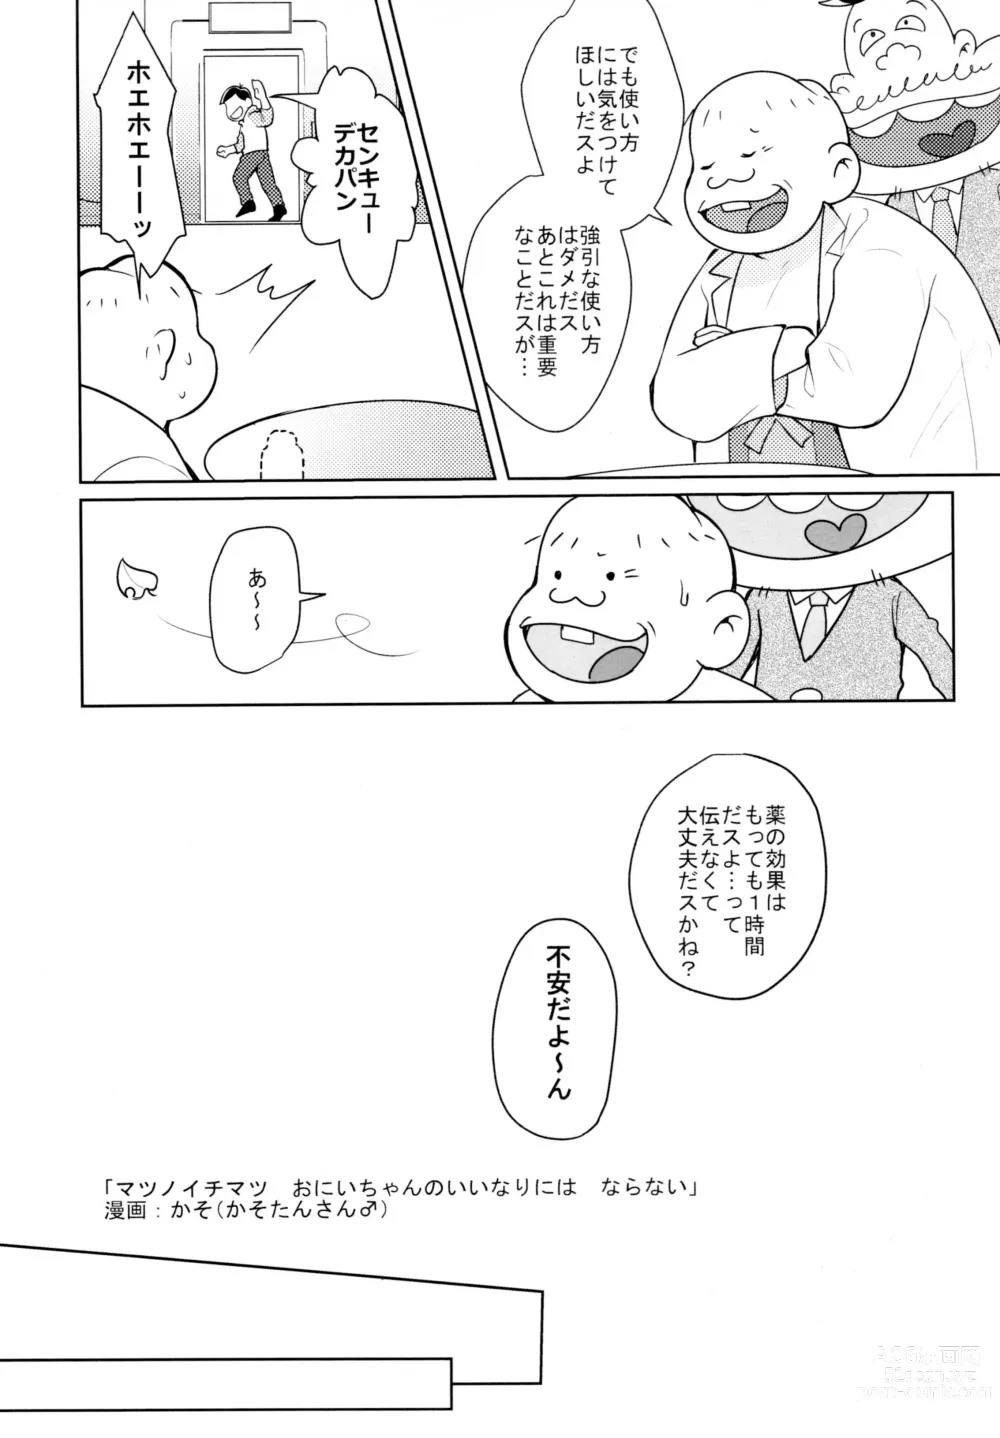 Page 4 of doujinshi Hyoushi Koukan Kikaku Goudoushi Matsuno Ichimatsu Onii-chan no Iinari ni Naranai